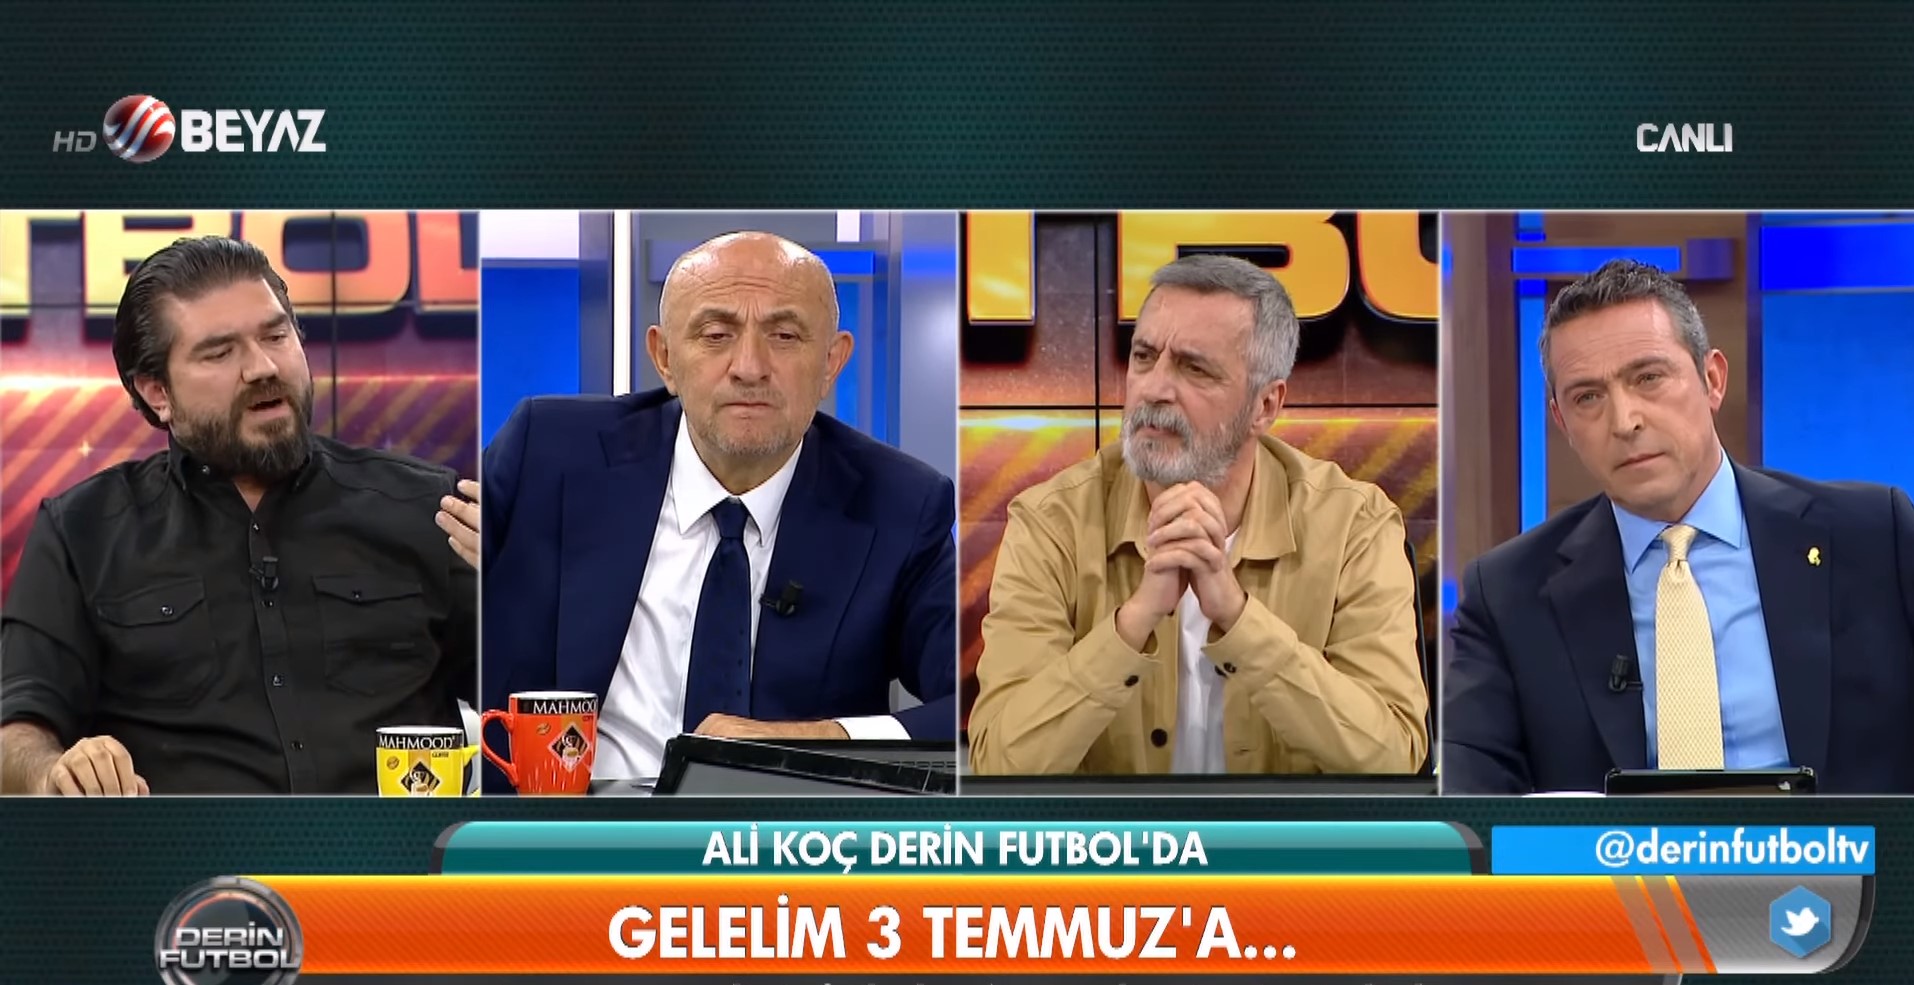 Ali Koç ve Rasim Ozan Kütahyalı birbirine girdi! Rasim Ozan'dan olay ifade:Fethullah Gülen'le Koç Holding'in de ilişkileri var çok güçlüydü